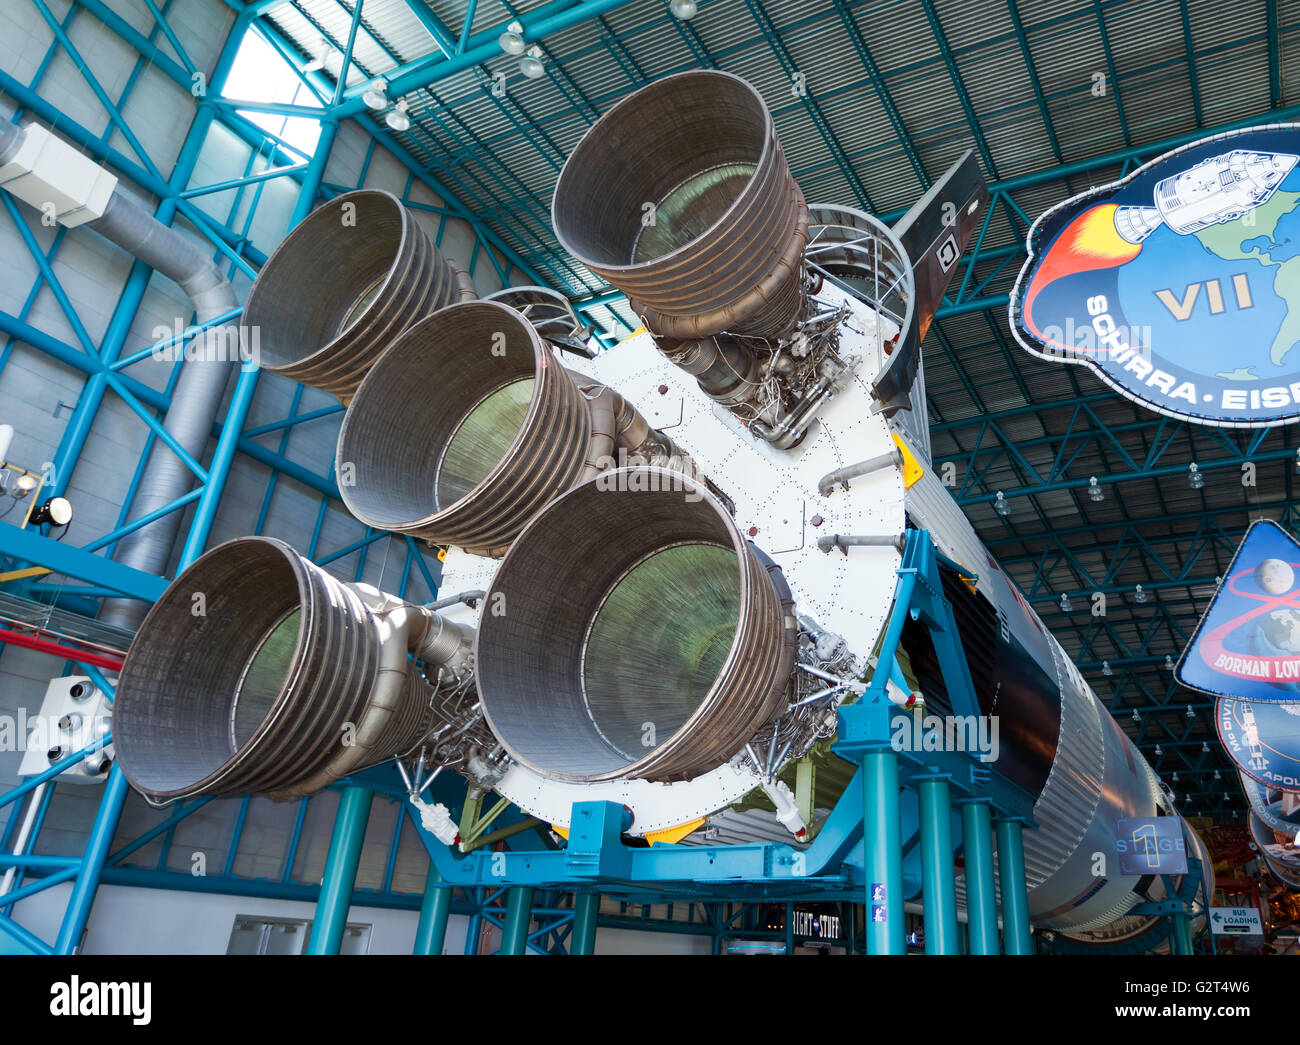 Les moteurs fusée géante sur la première étape de la Fusée Saturn V, qui a été utilisé dans le programme Apollo de prendre des hommes sur la lune. Banque D'Images